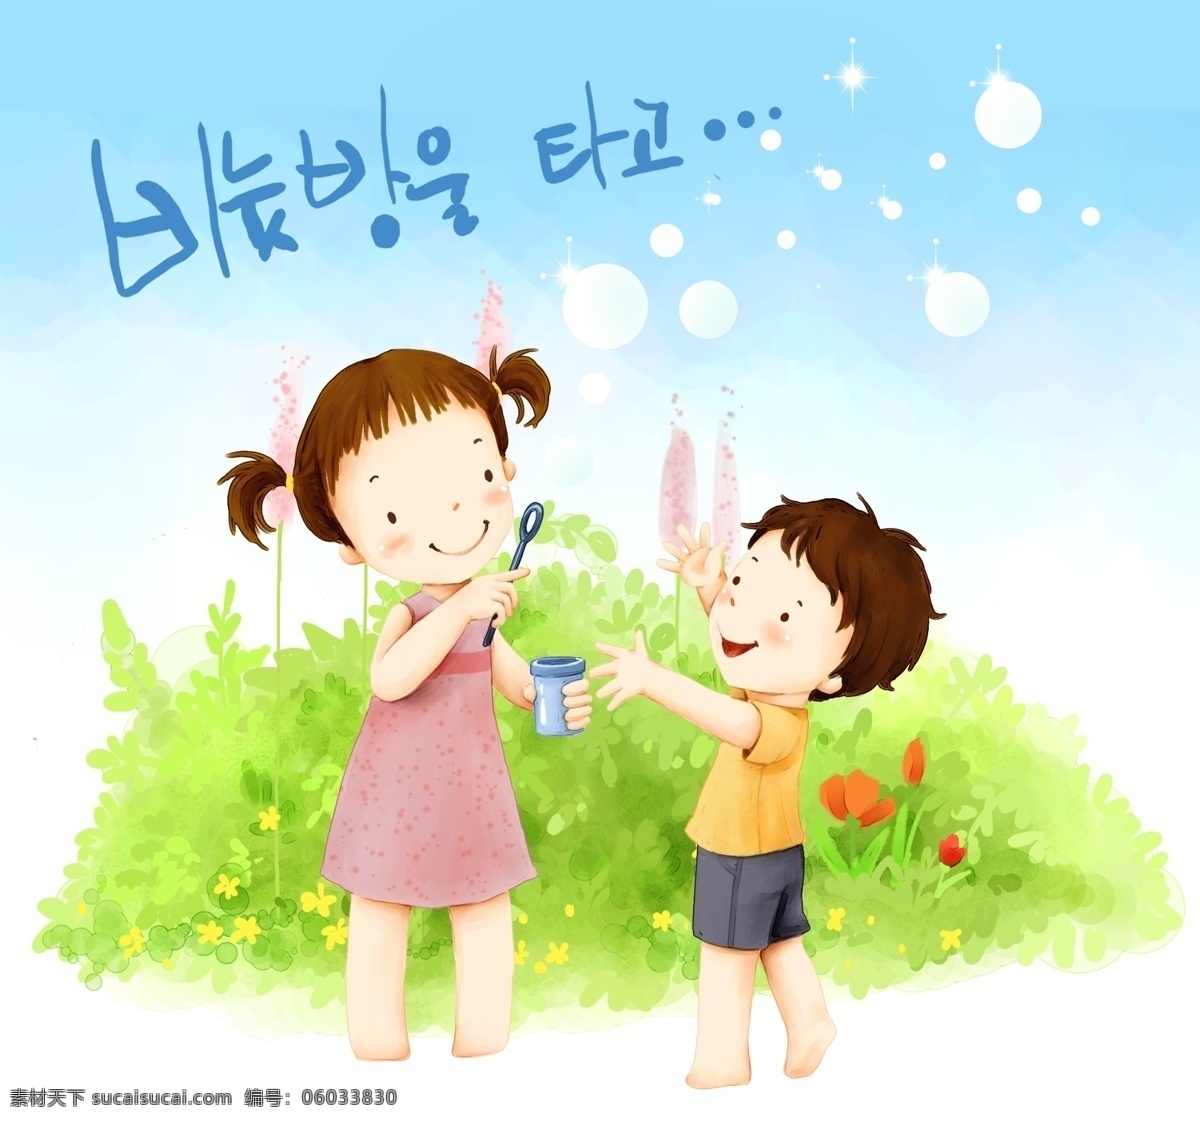 欢乐家庭 卡通漫画 韩式风格 分层 psd0039 设计素材 家庭生活 分层插画 psd源文件 白色